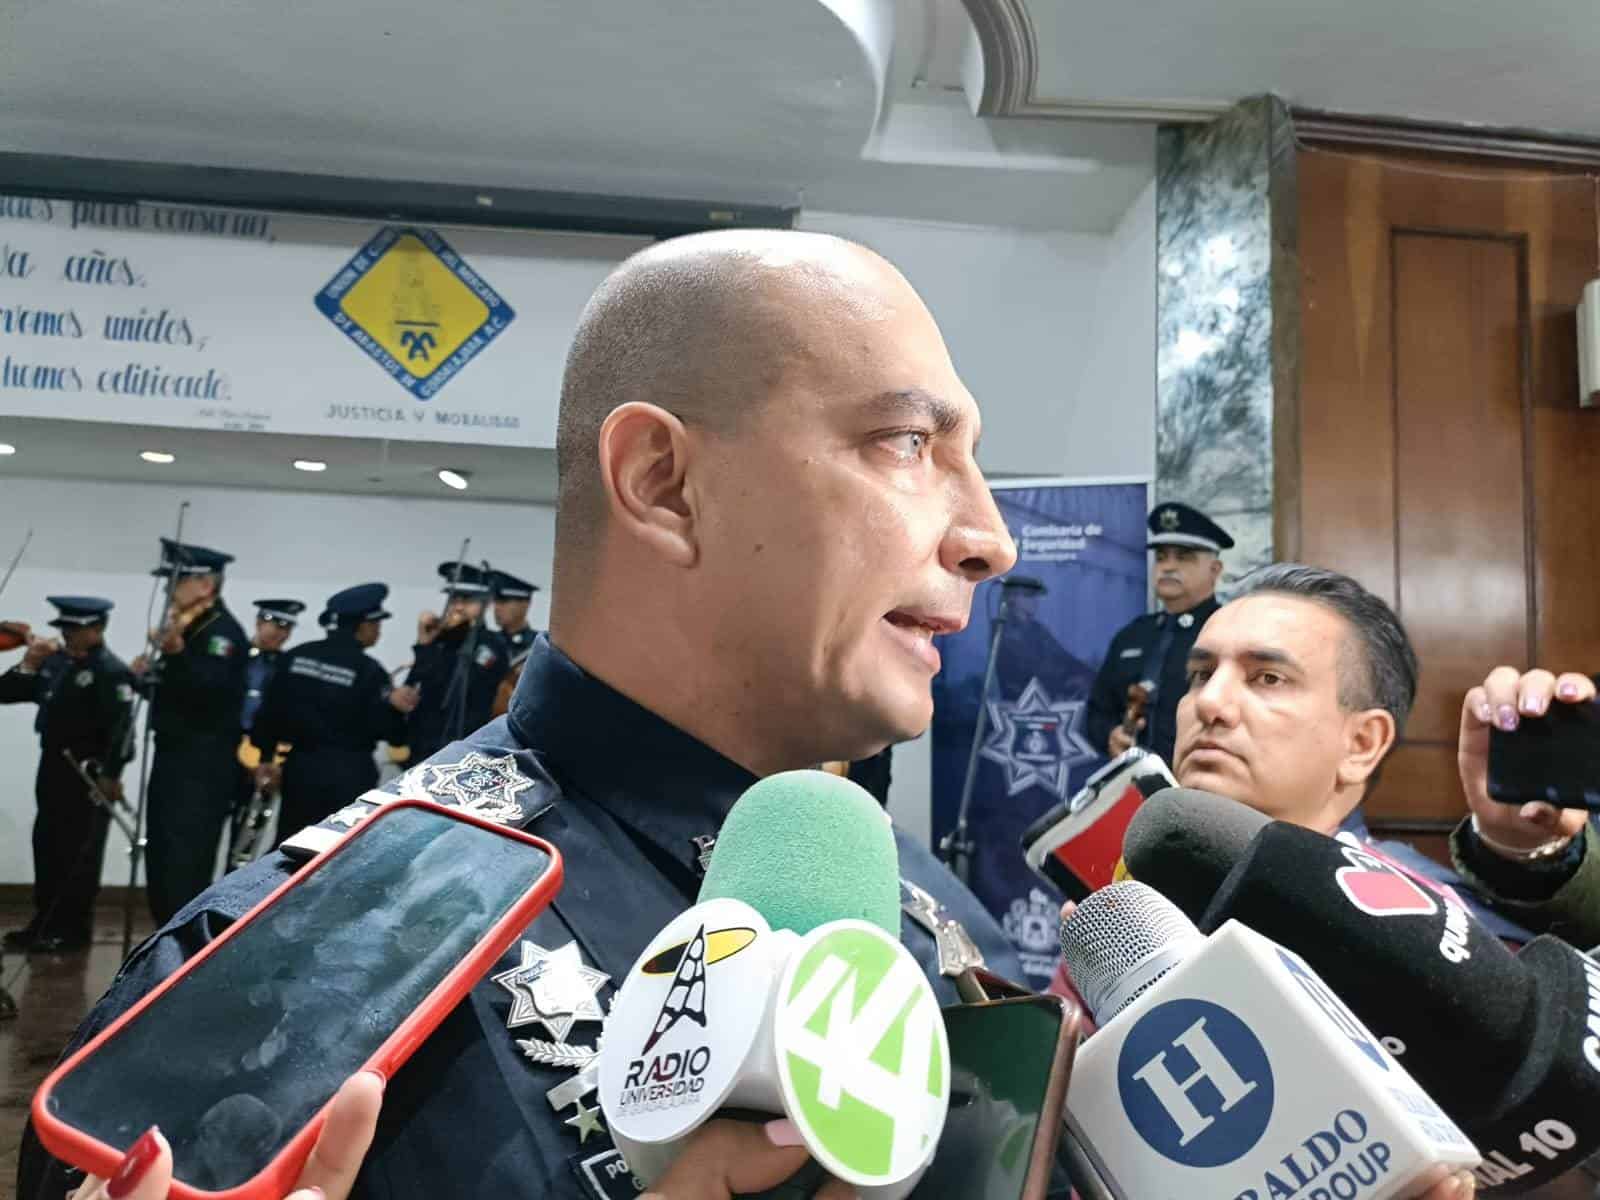 Guadalajara festeja a sus policías; afirma que es de las mejores en sueldos y equipamiento en México